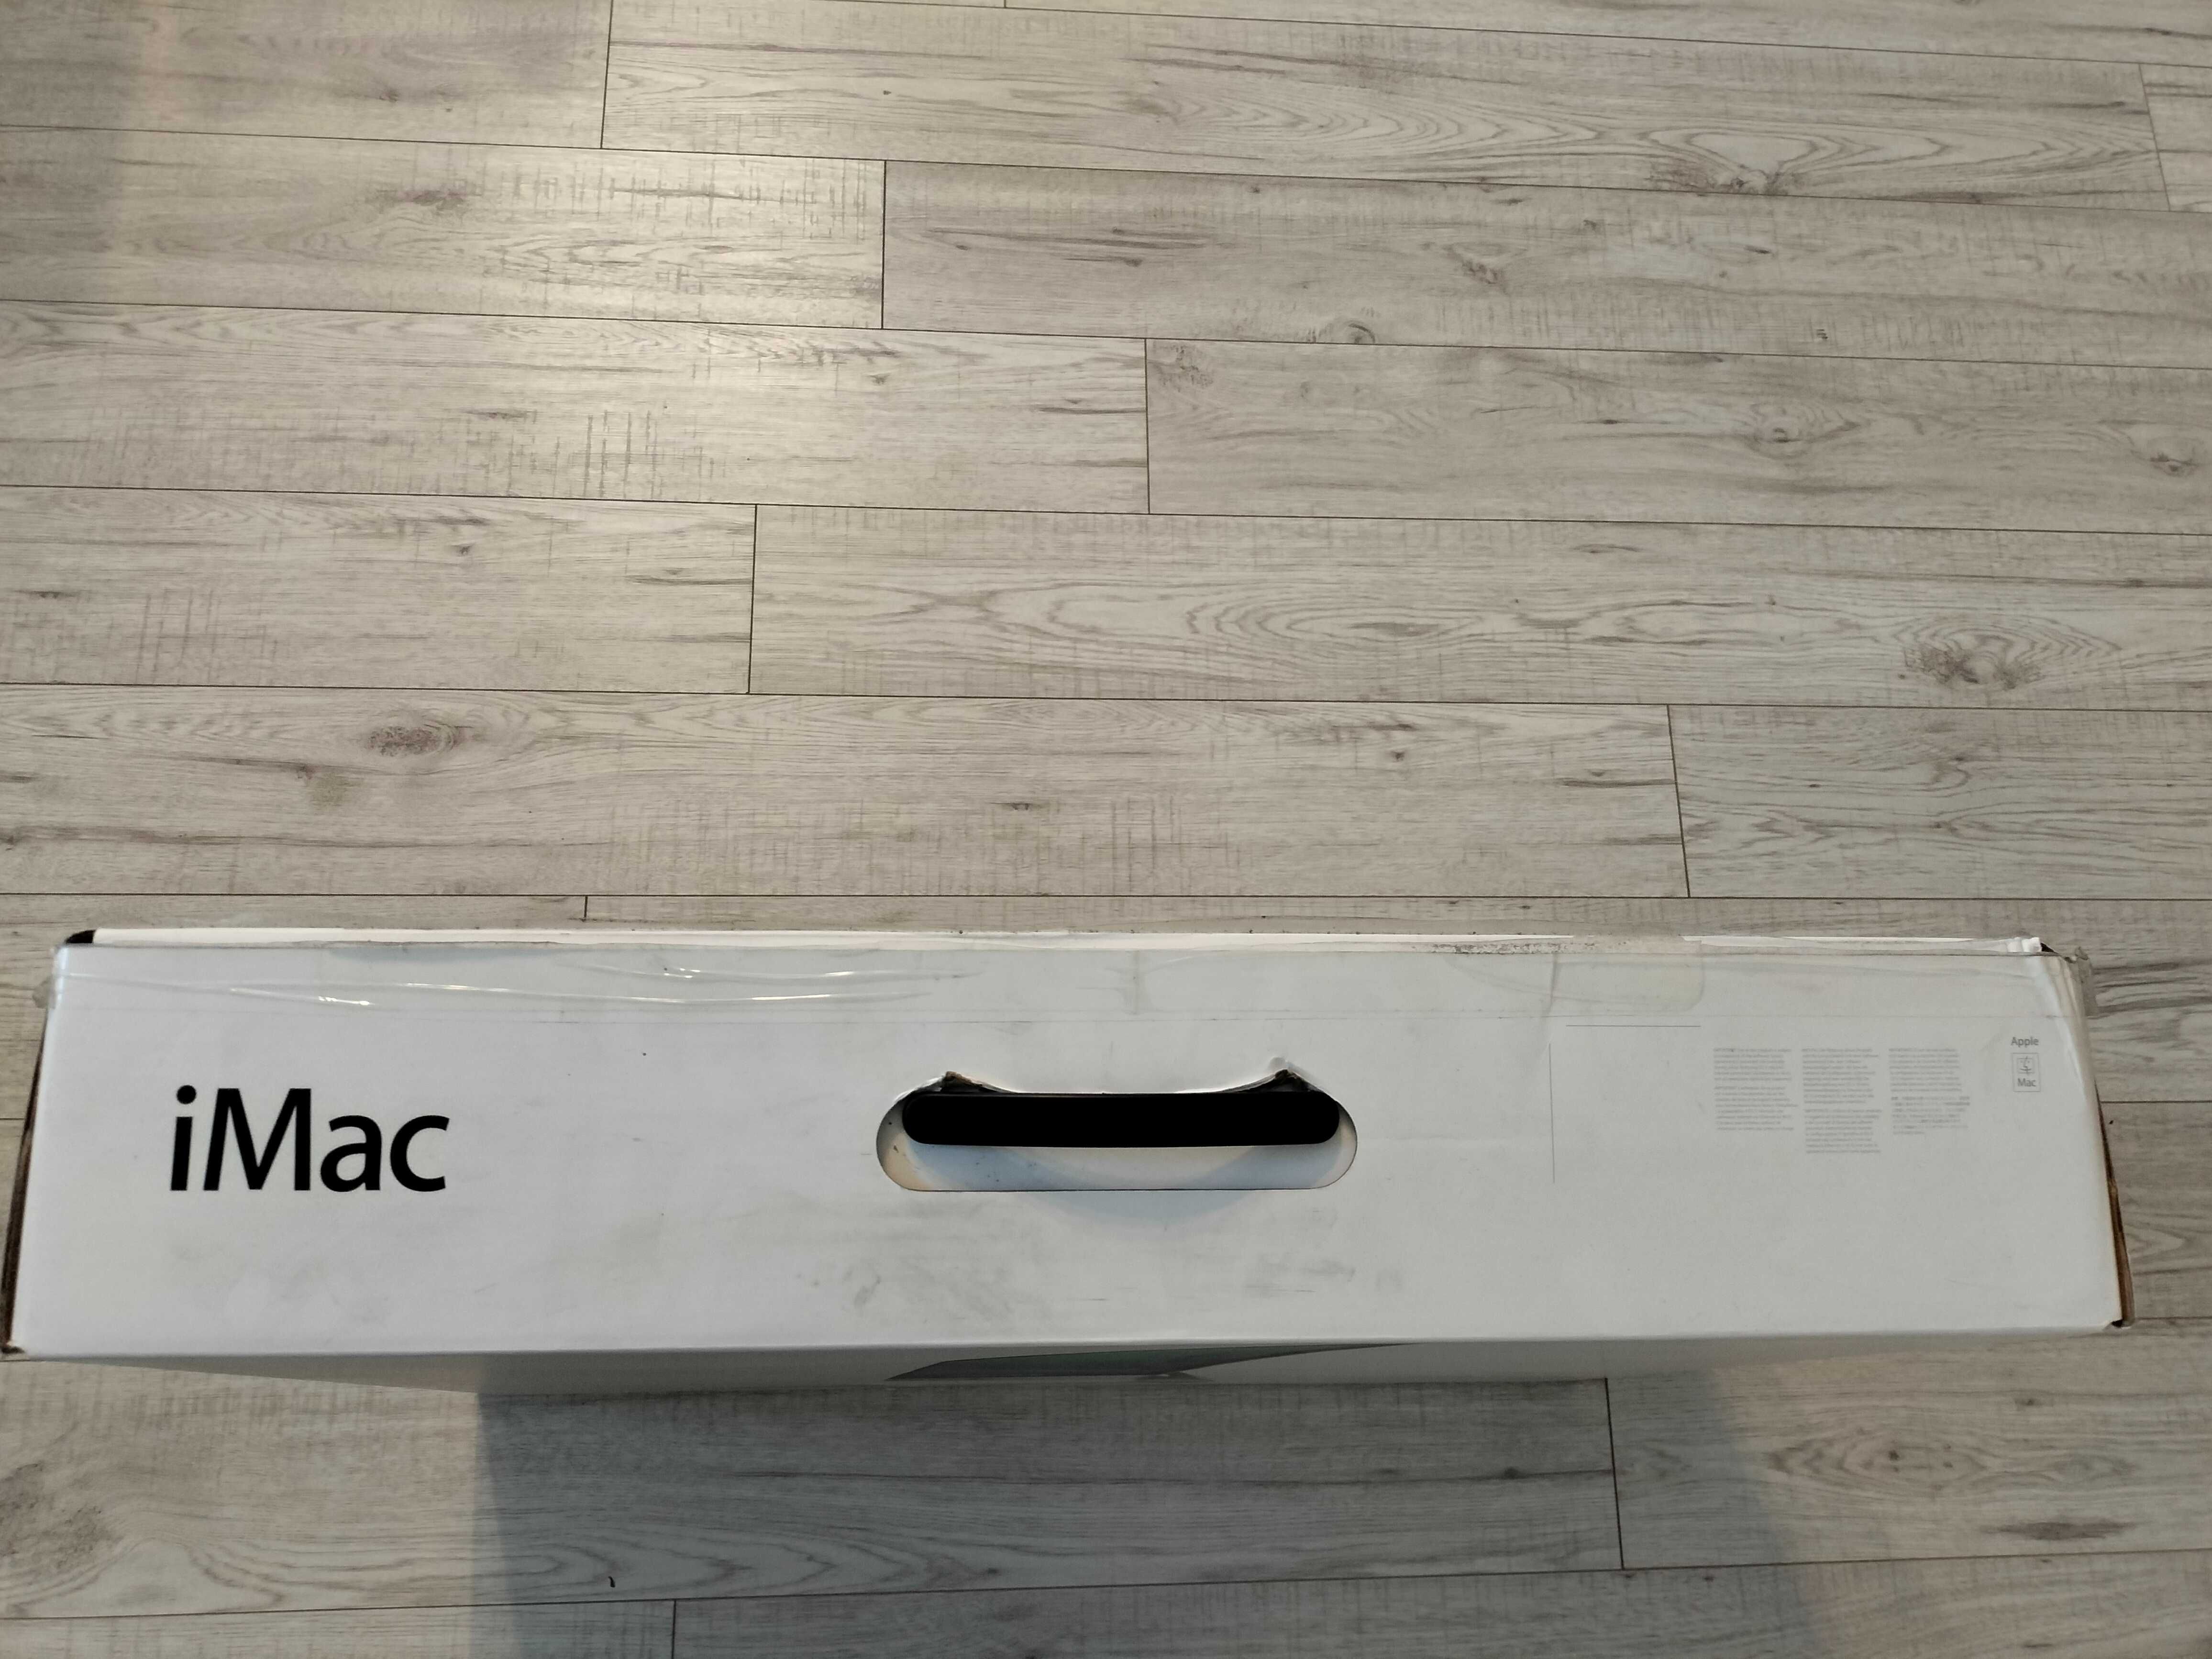 Sprzedam komputer iMac 27 cali z roku 2013, 12 GB RAM, 2 TB dysku